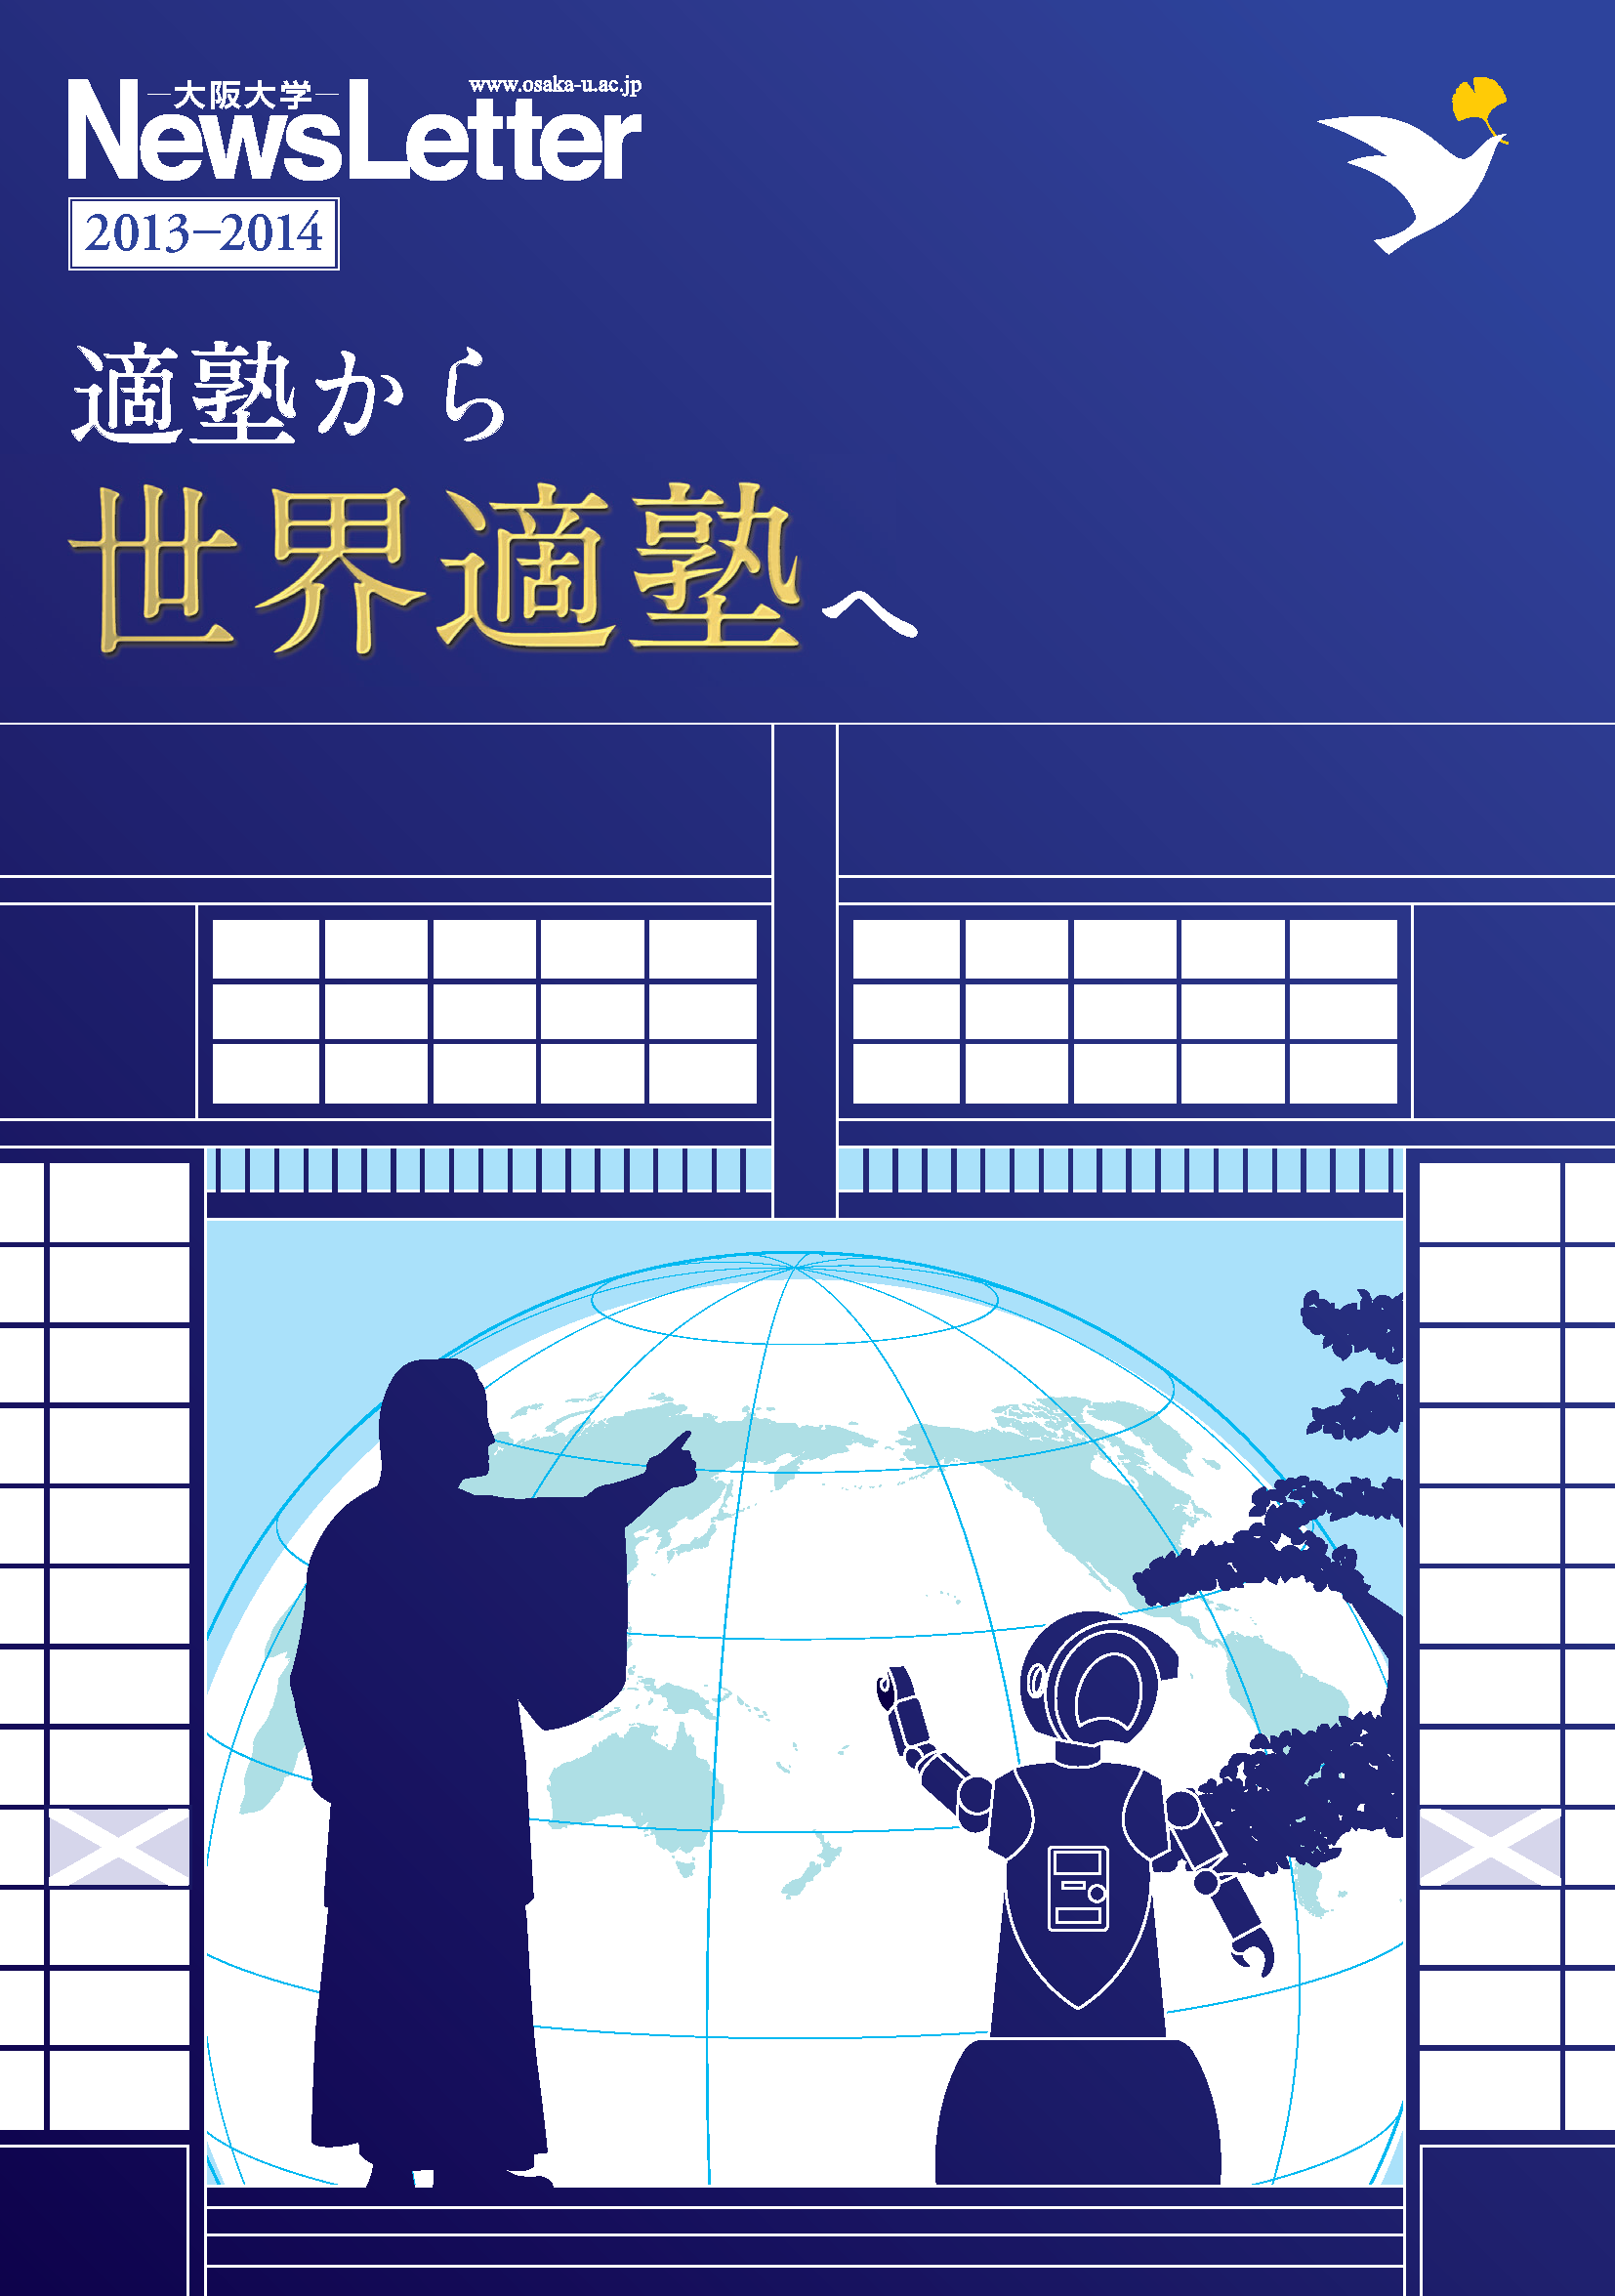 大阪大学ニューズレター特別号と2014年秋号を刊行